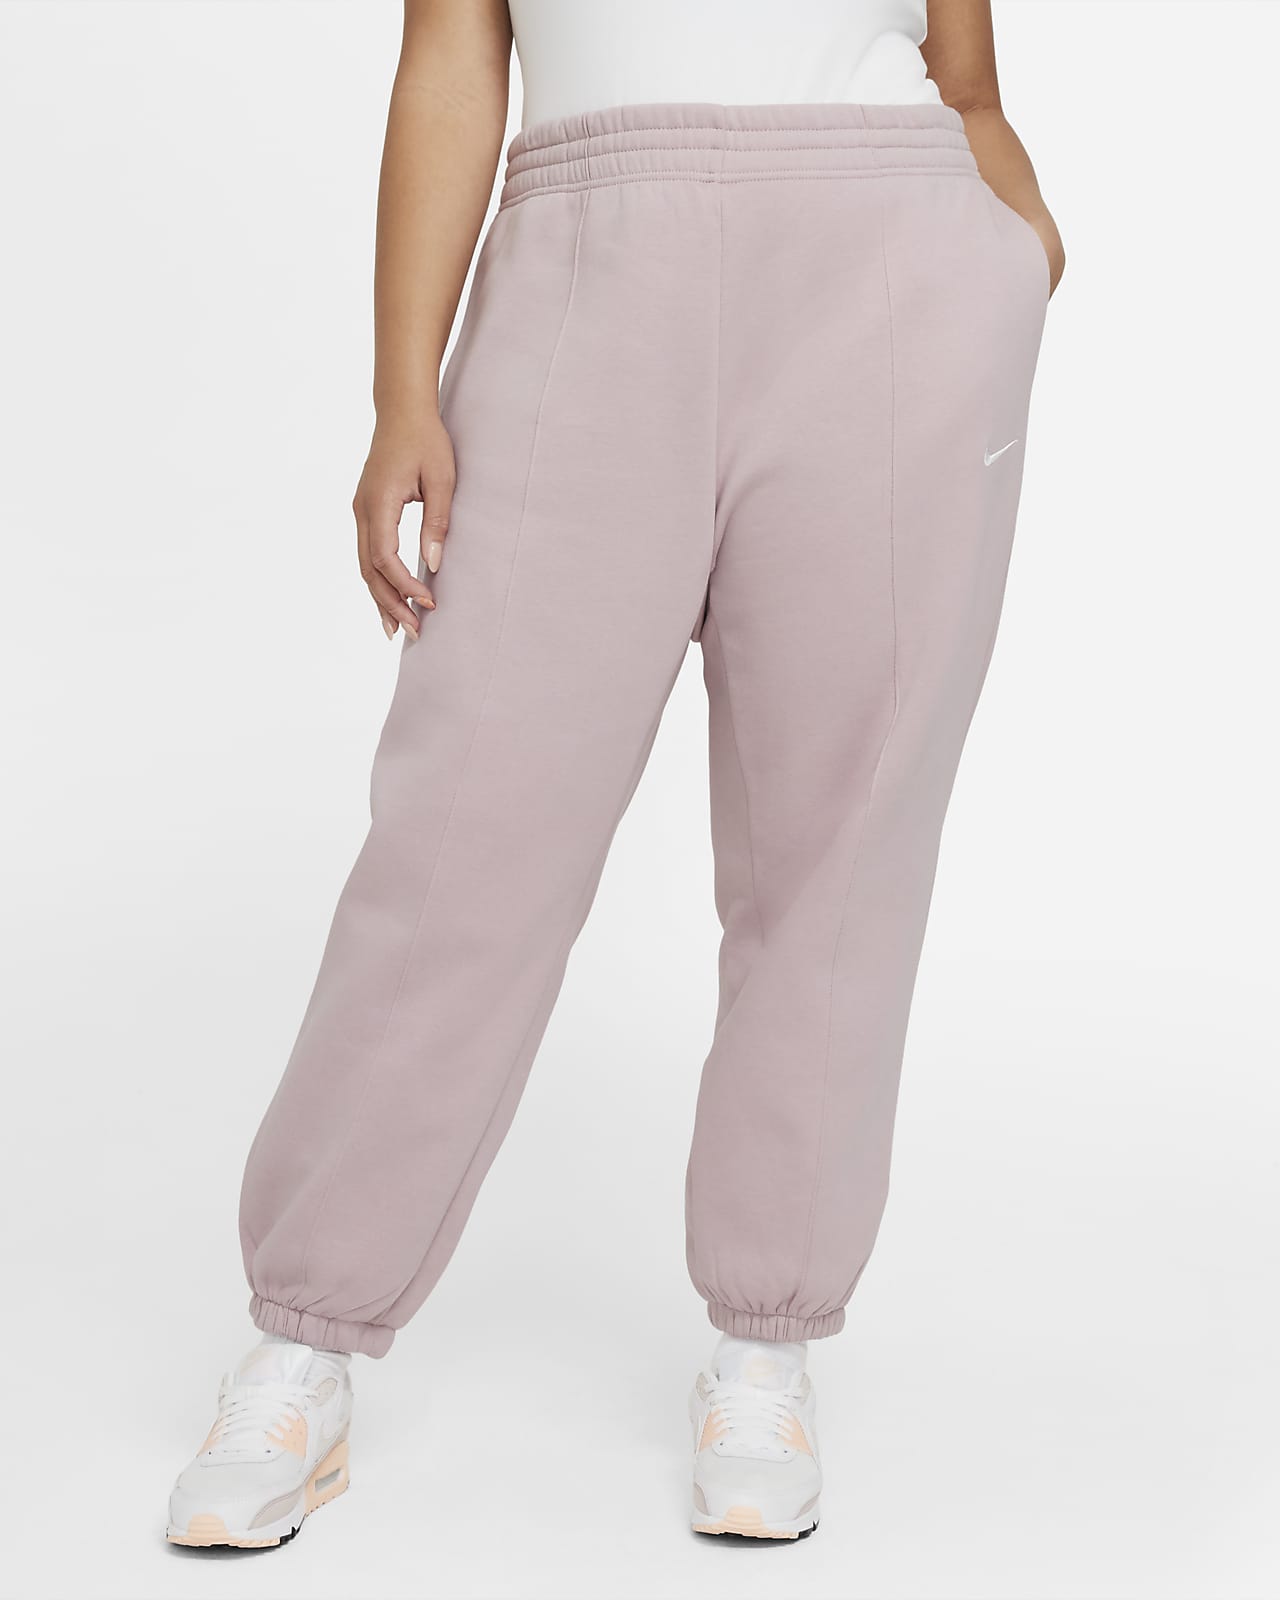 Nike Sportswear Trend Women's Fleece Trousers (Plus Size)